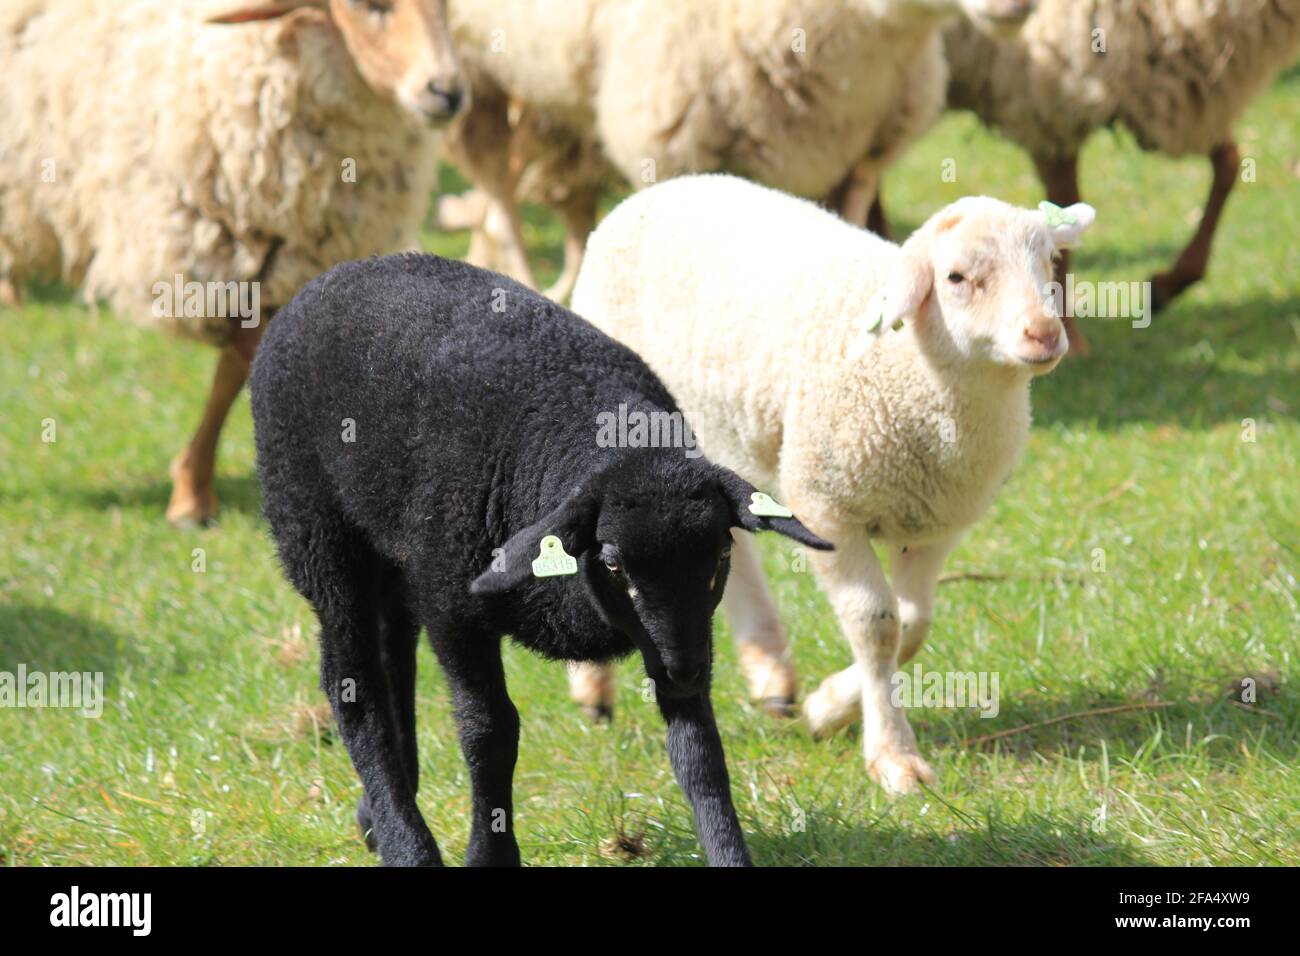 Sheep herd in citypark Staddijk in Nijmegen, the Netherlands Stock Photo